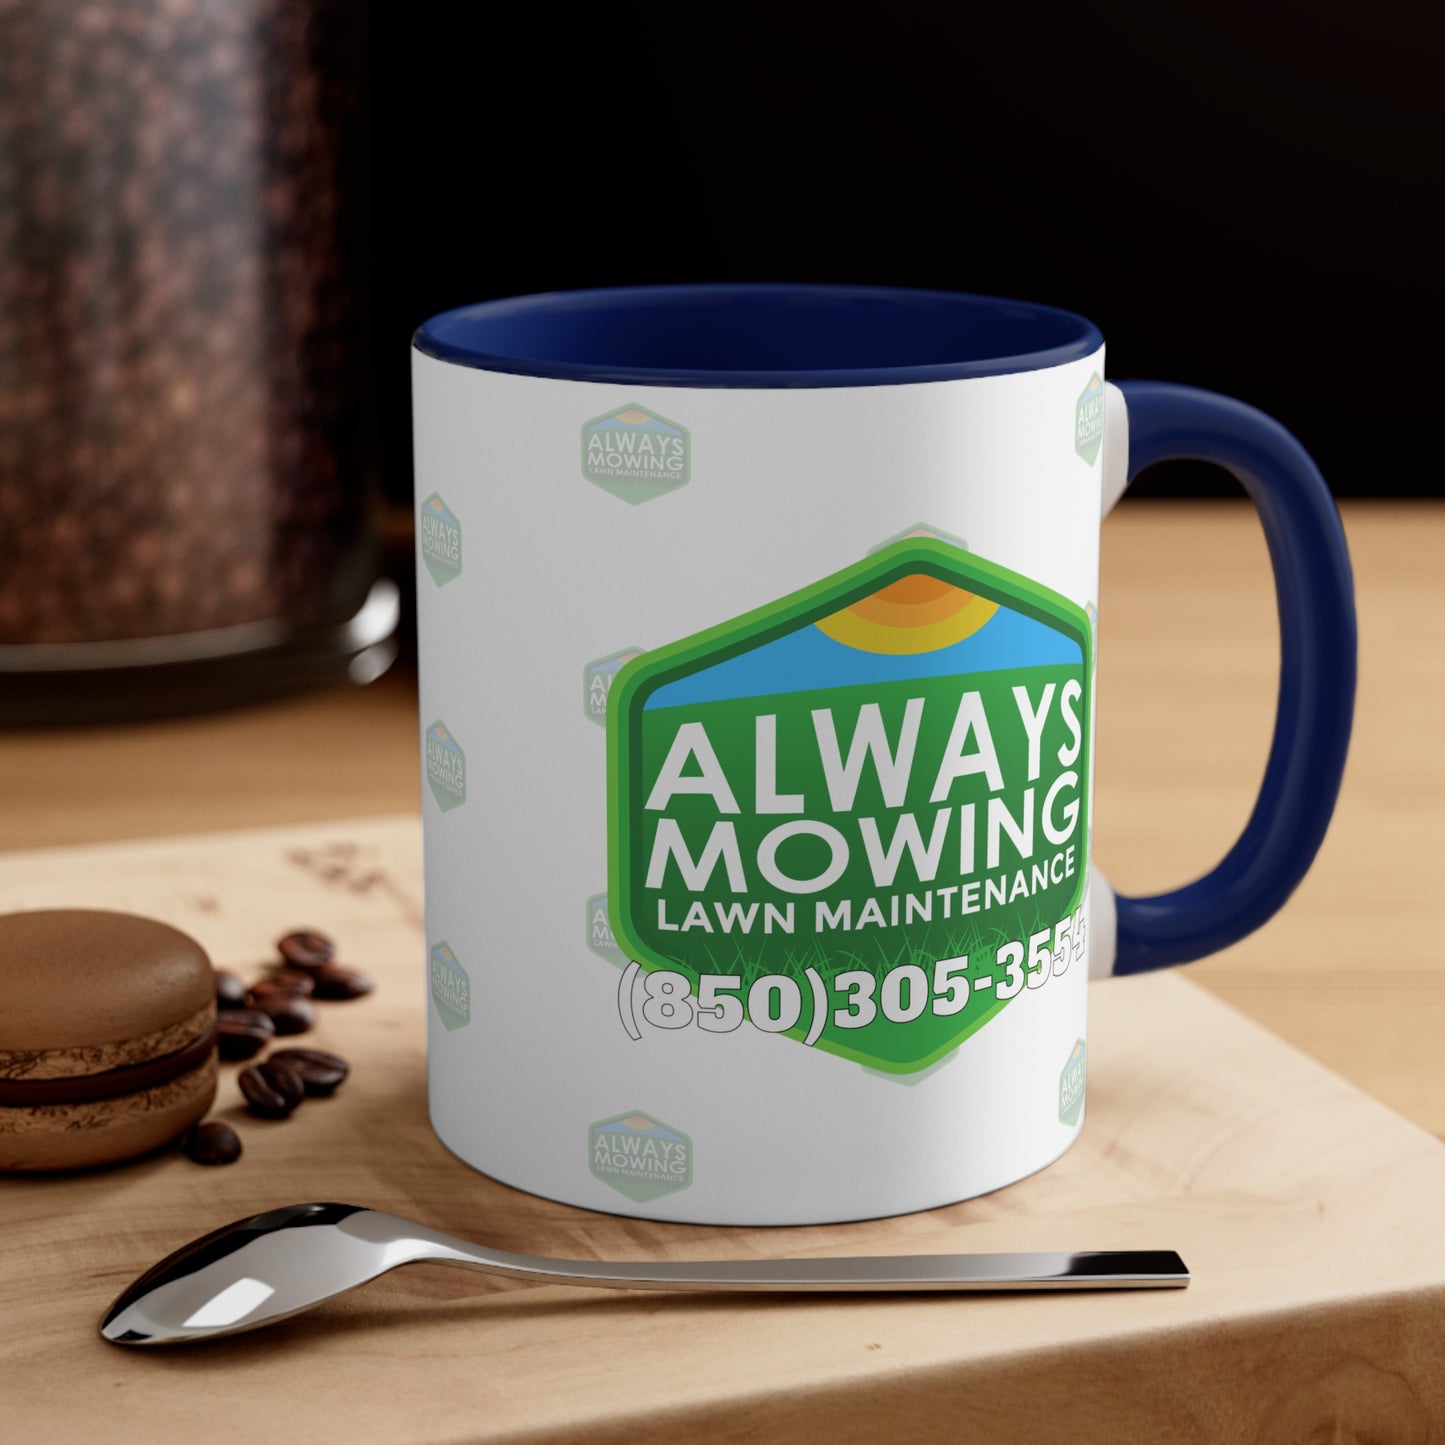 Always Mowing Coffee Mug, 11oz